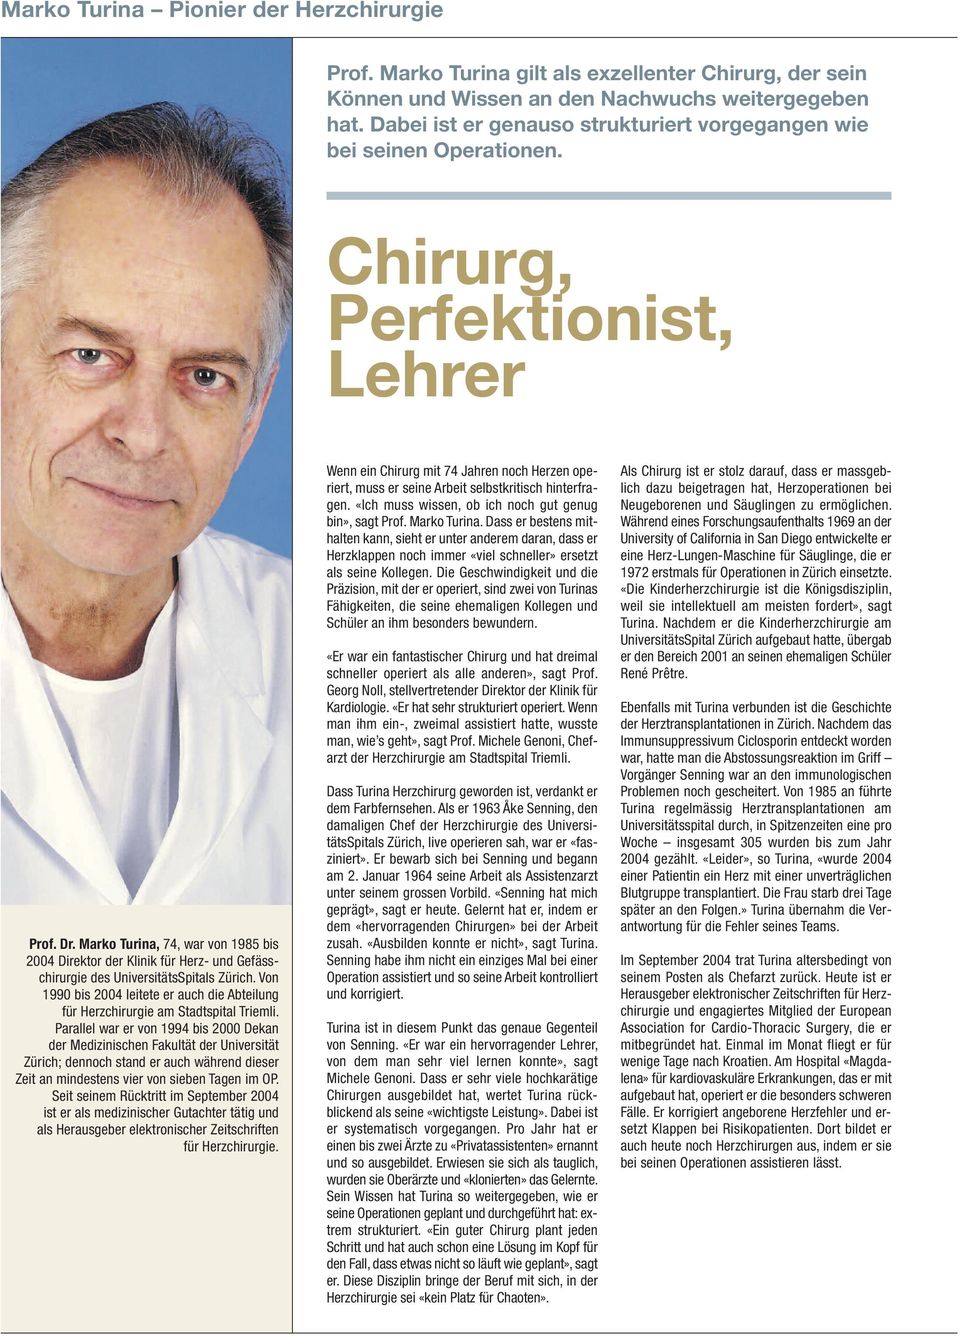 Marko Turina, 74, war von 1985 bis 2004 Direktor der Klinik für Herz- und Gefässchirurgie des UniversitätsSpitals Zürich.